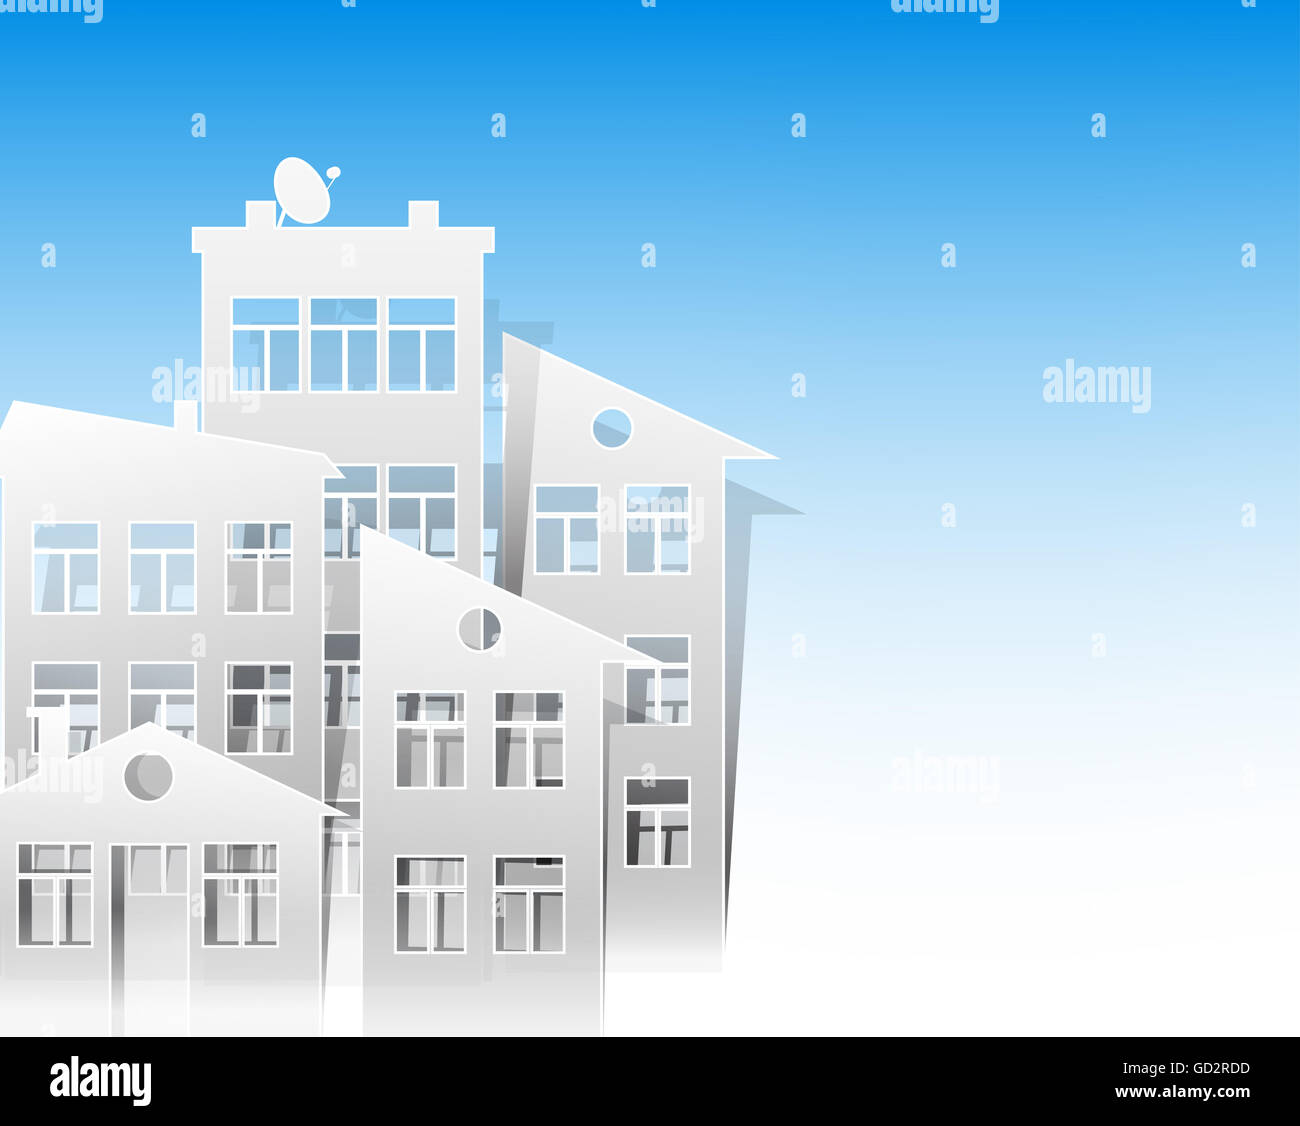 Casas blancas recortadas de papel estilo como símbolos de inmobiliario sobre fondo de cielo azul claro Foto de stock